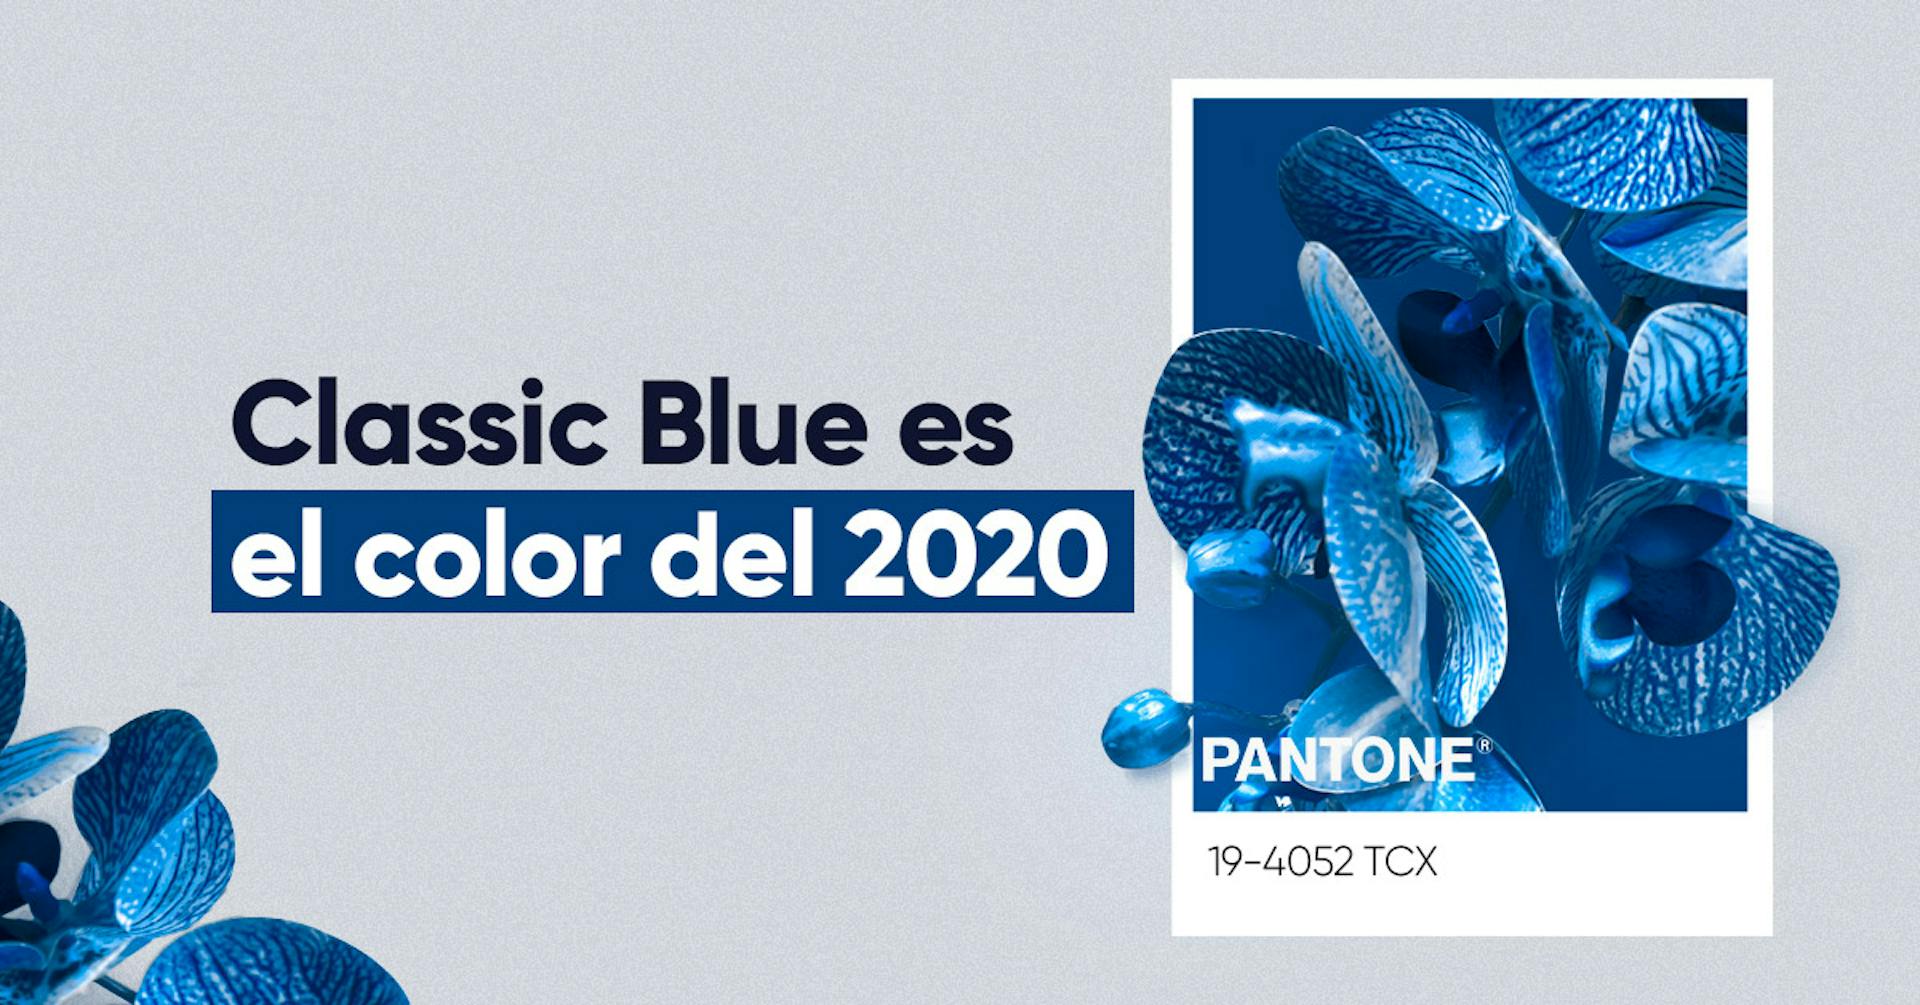 Pantone 2020: Classic Blue